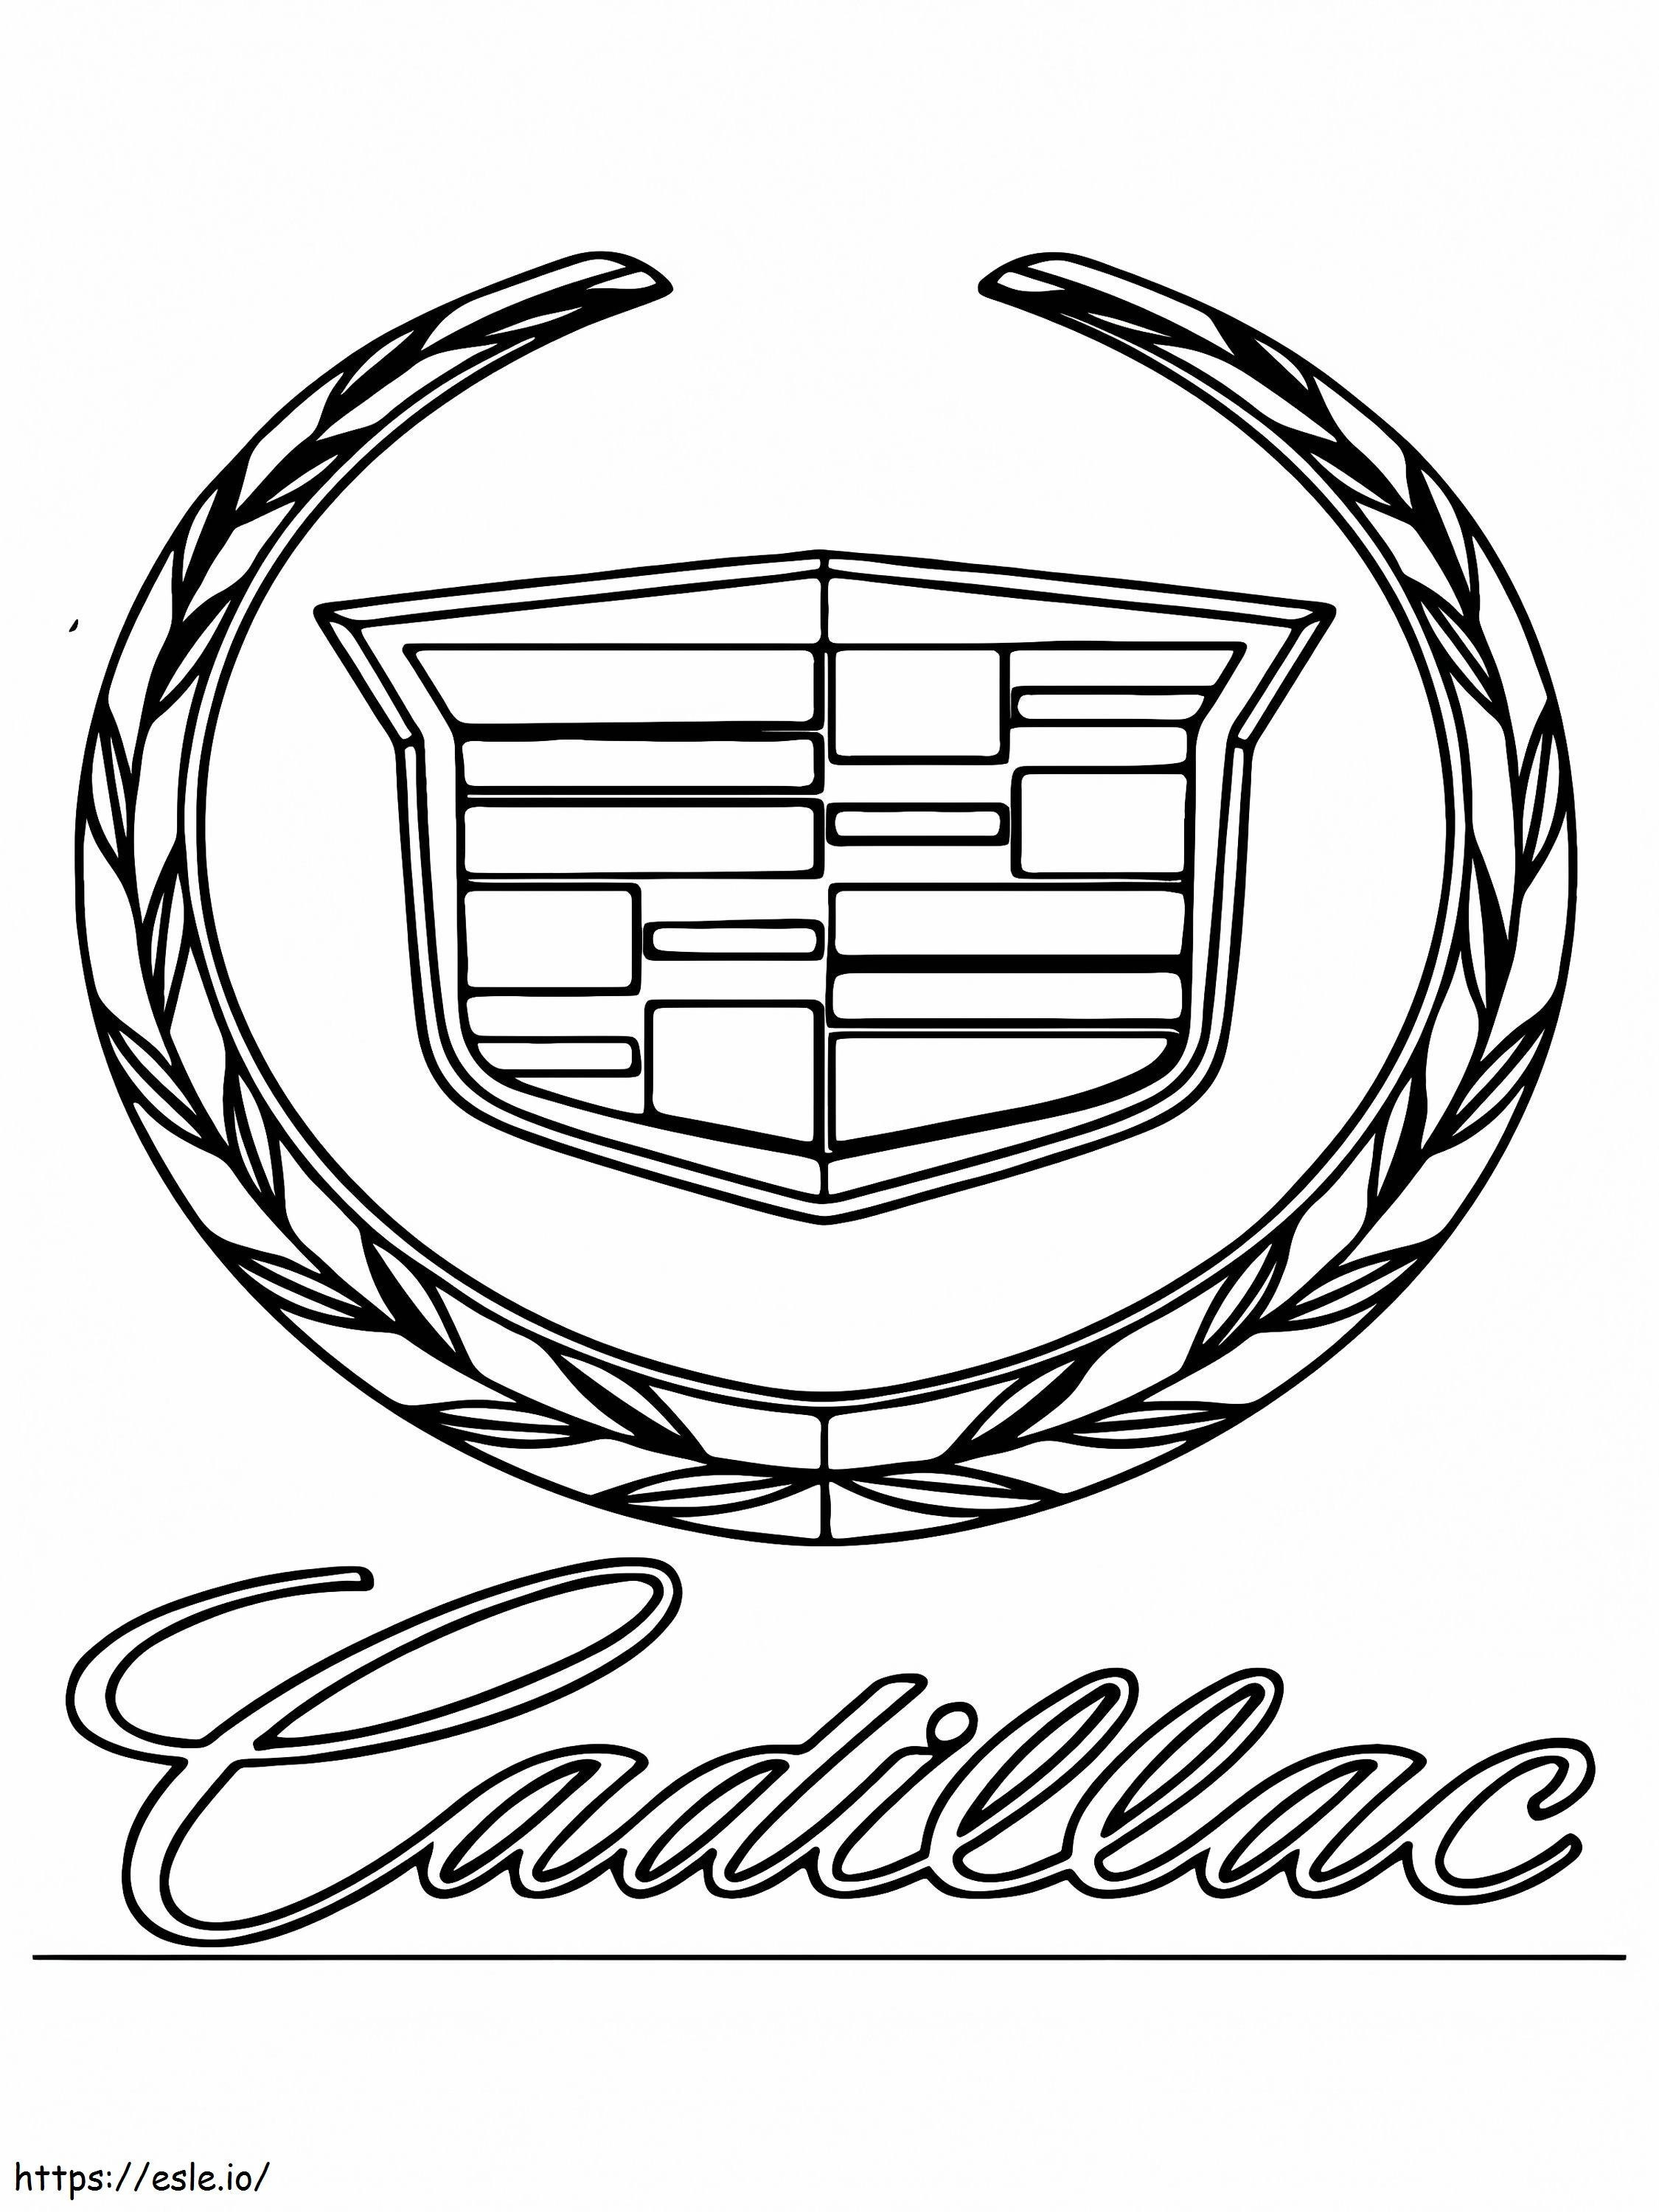 Cadillac Car Logo coloring page